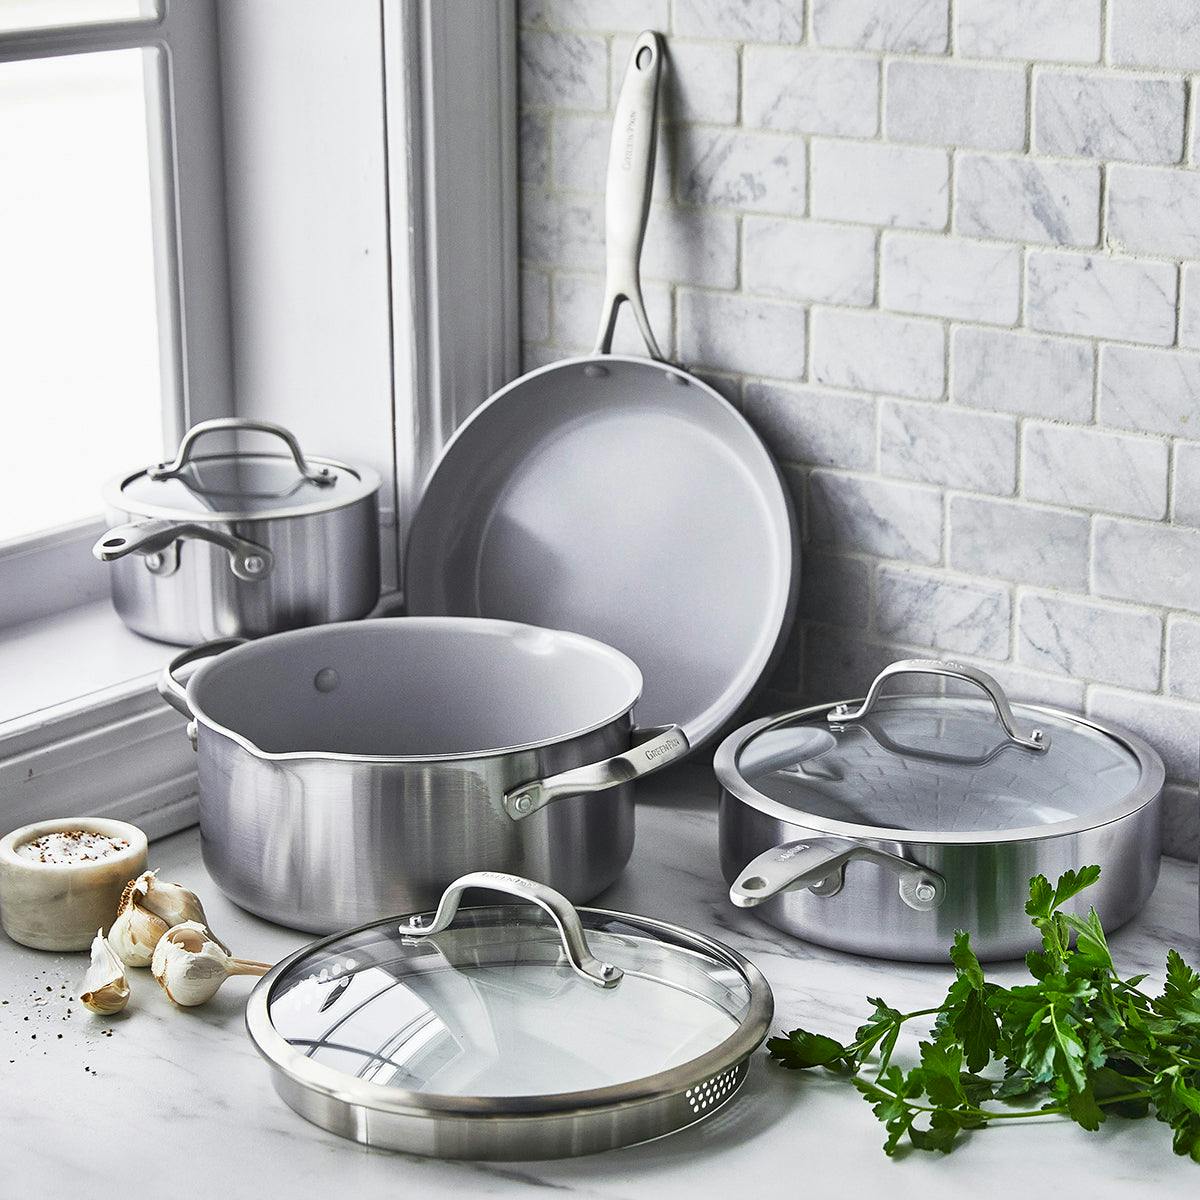 Marble Frying Pans, Venice Pots & Lids 9 Pcs Set